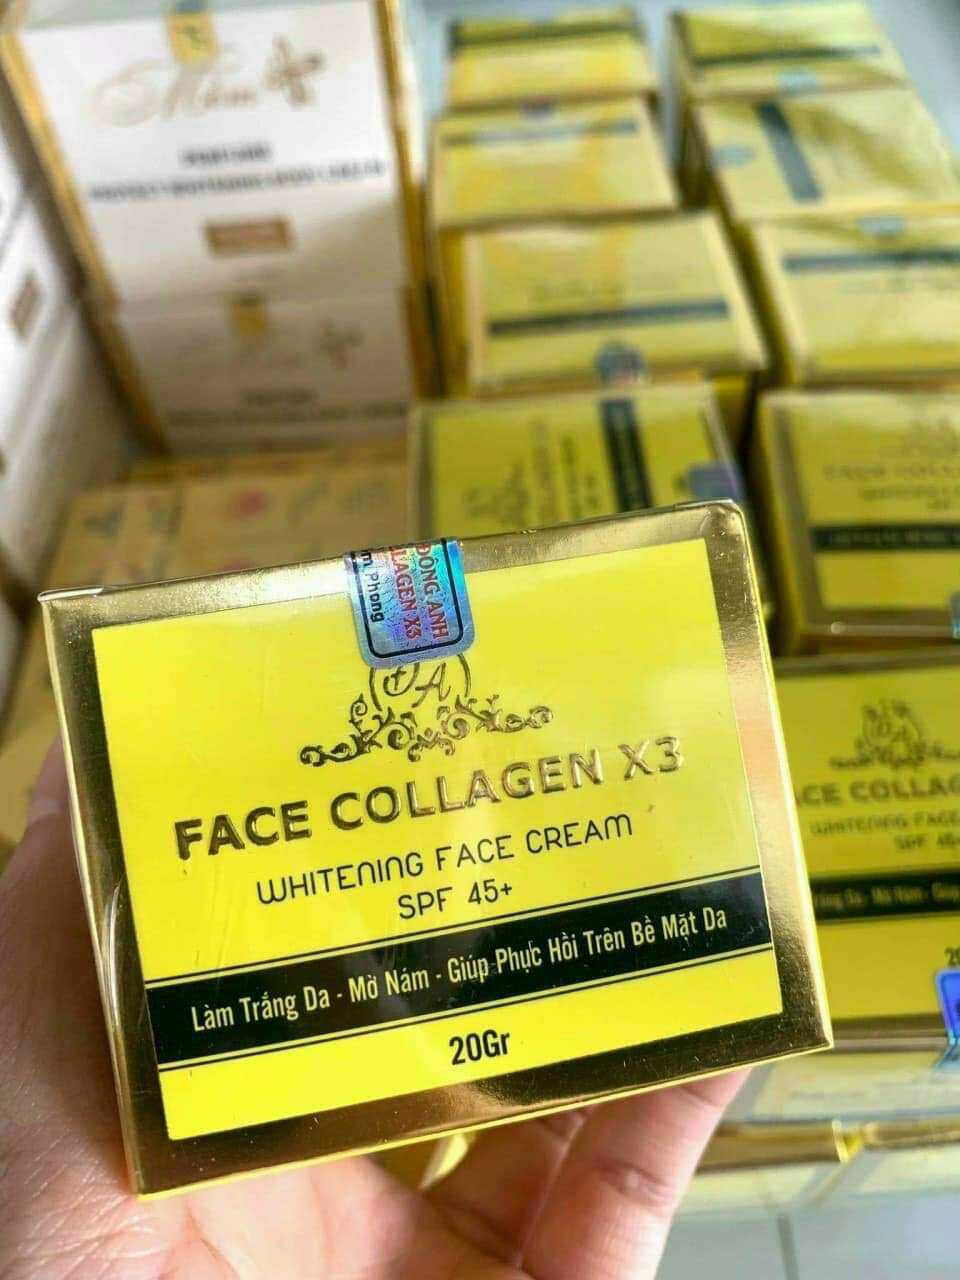 Kem Face Collagen X3 Đông Anh